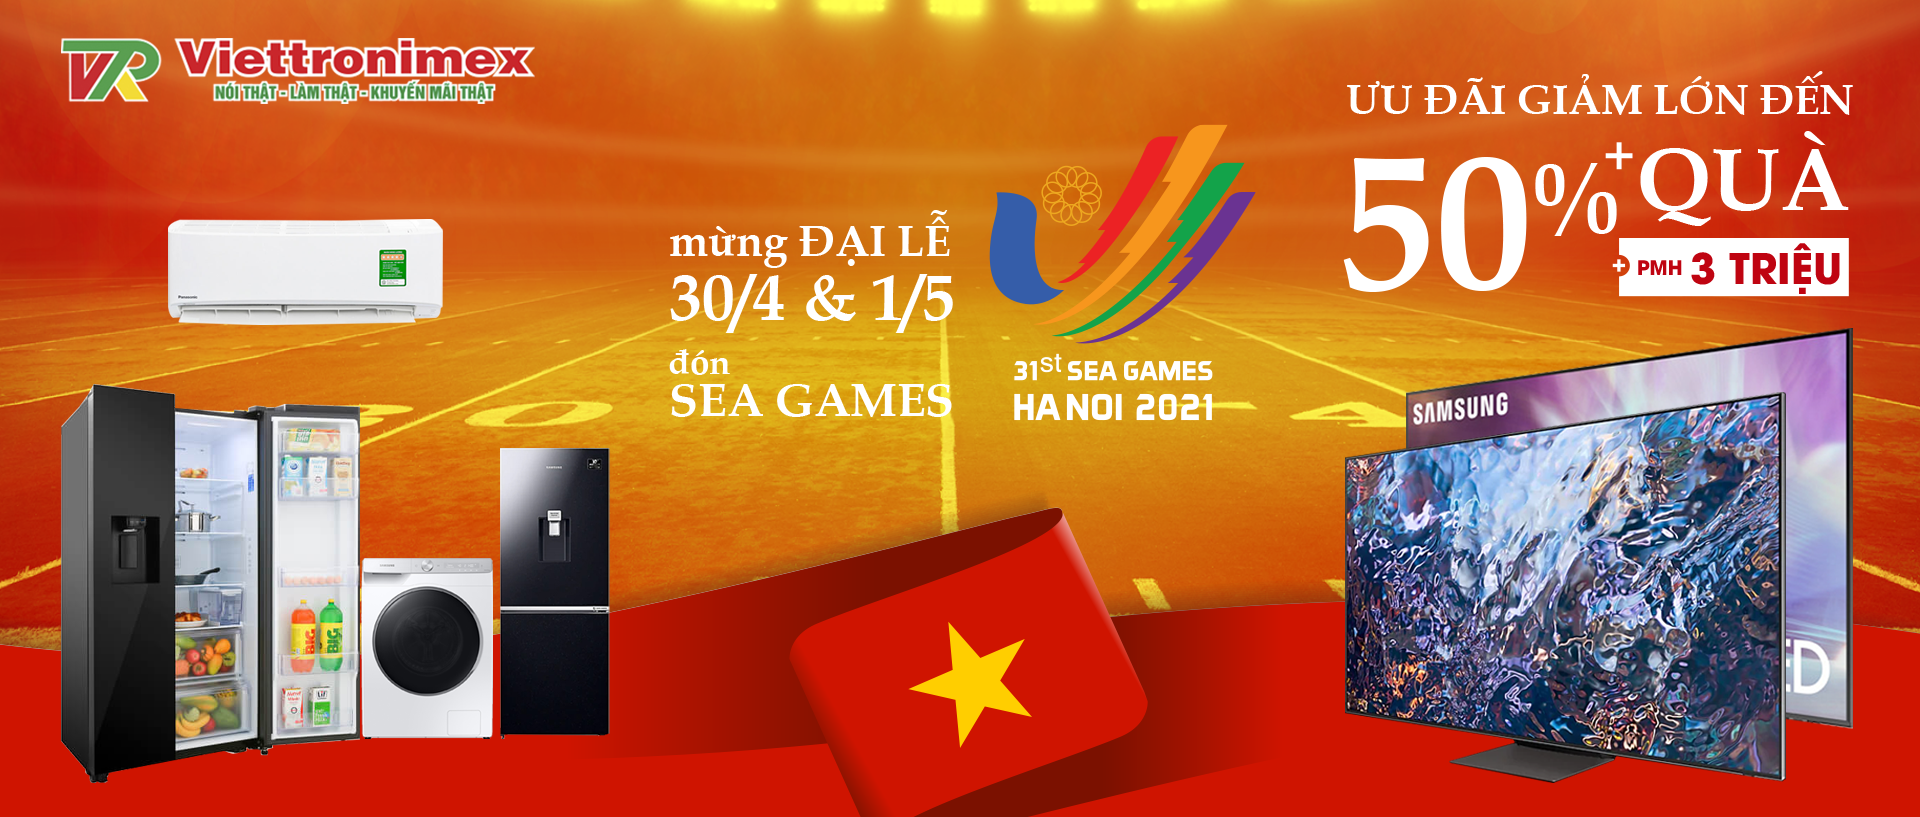 Mừng đại lễ - Đón Sea Games 31